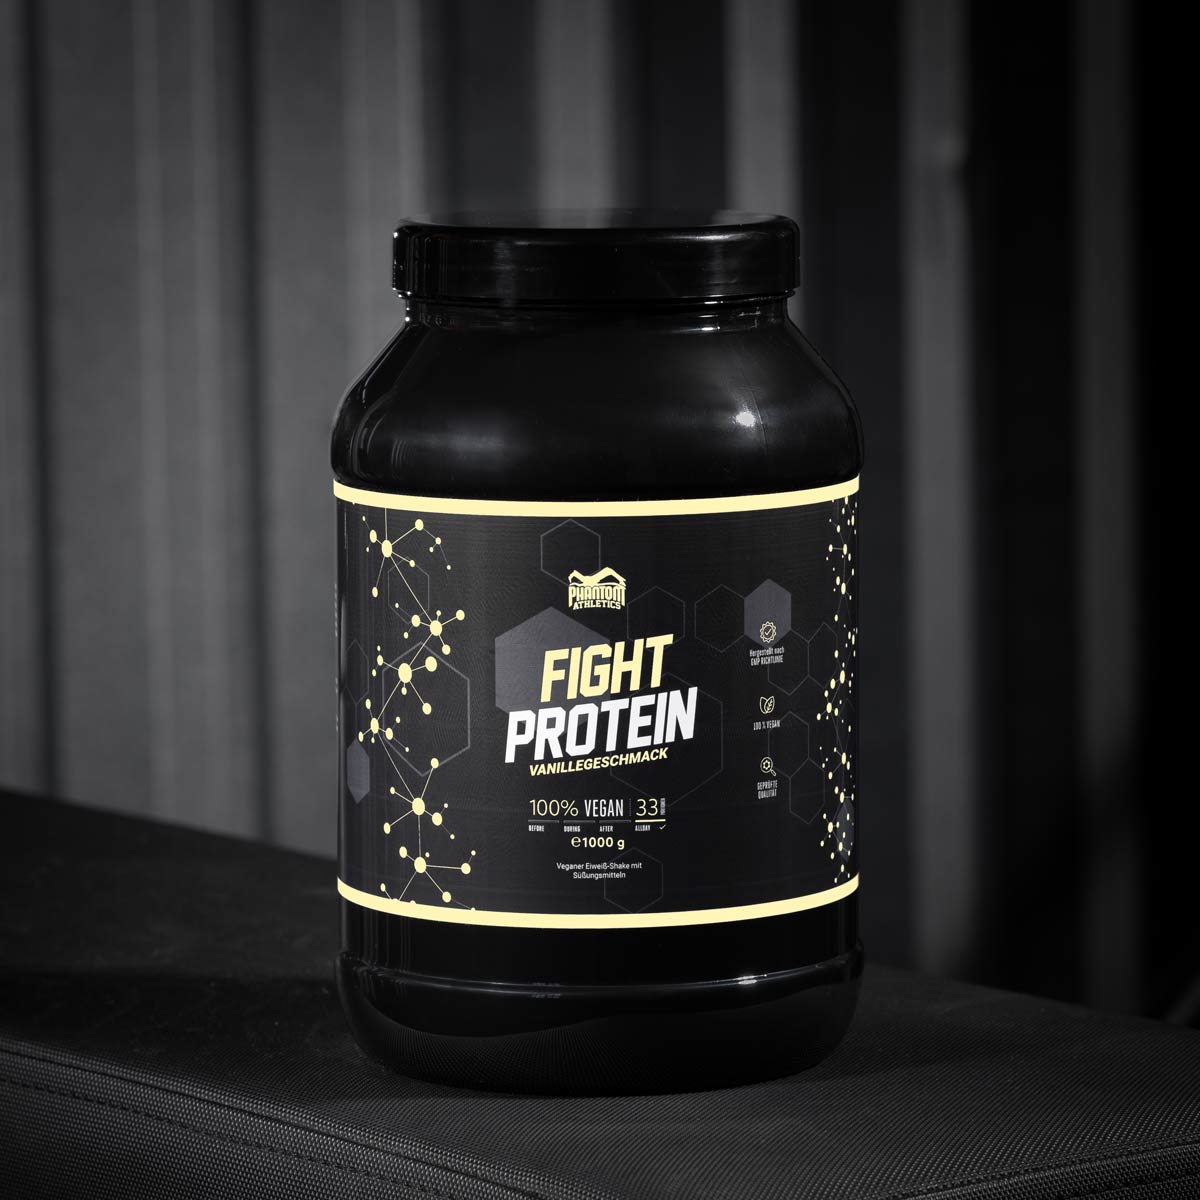 Phantom FIGHT Protein für Kampfsportler mit Vanille Geschmack im Gym.